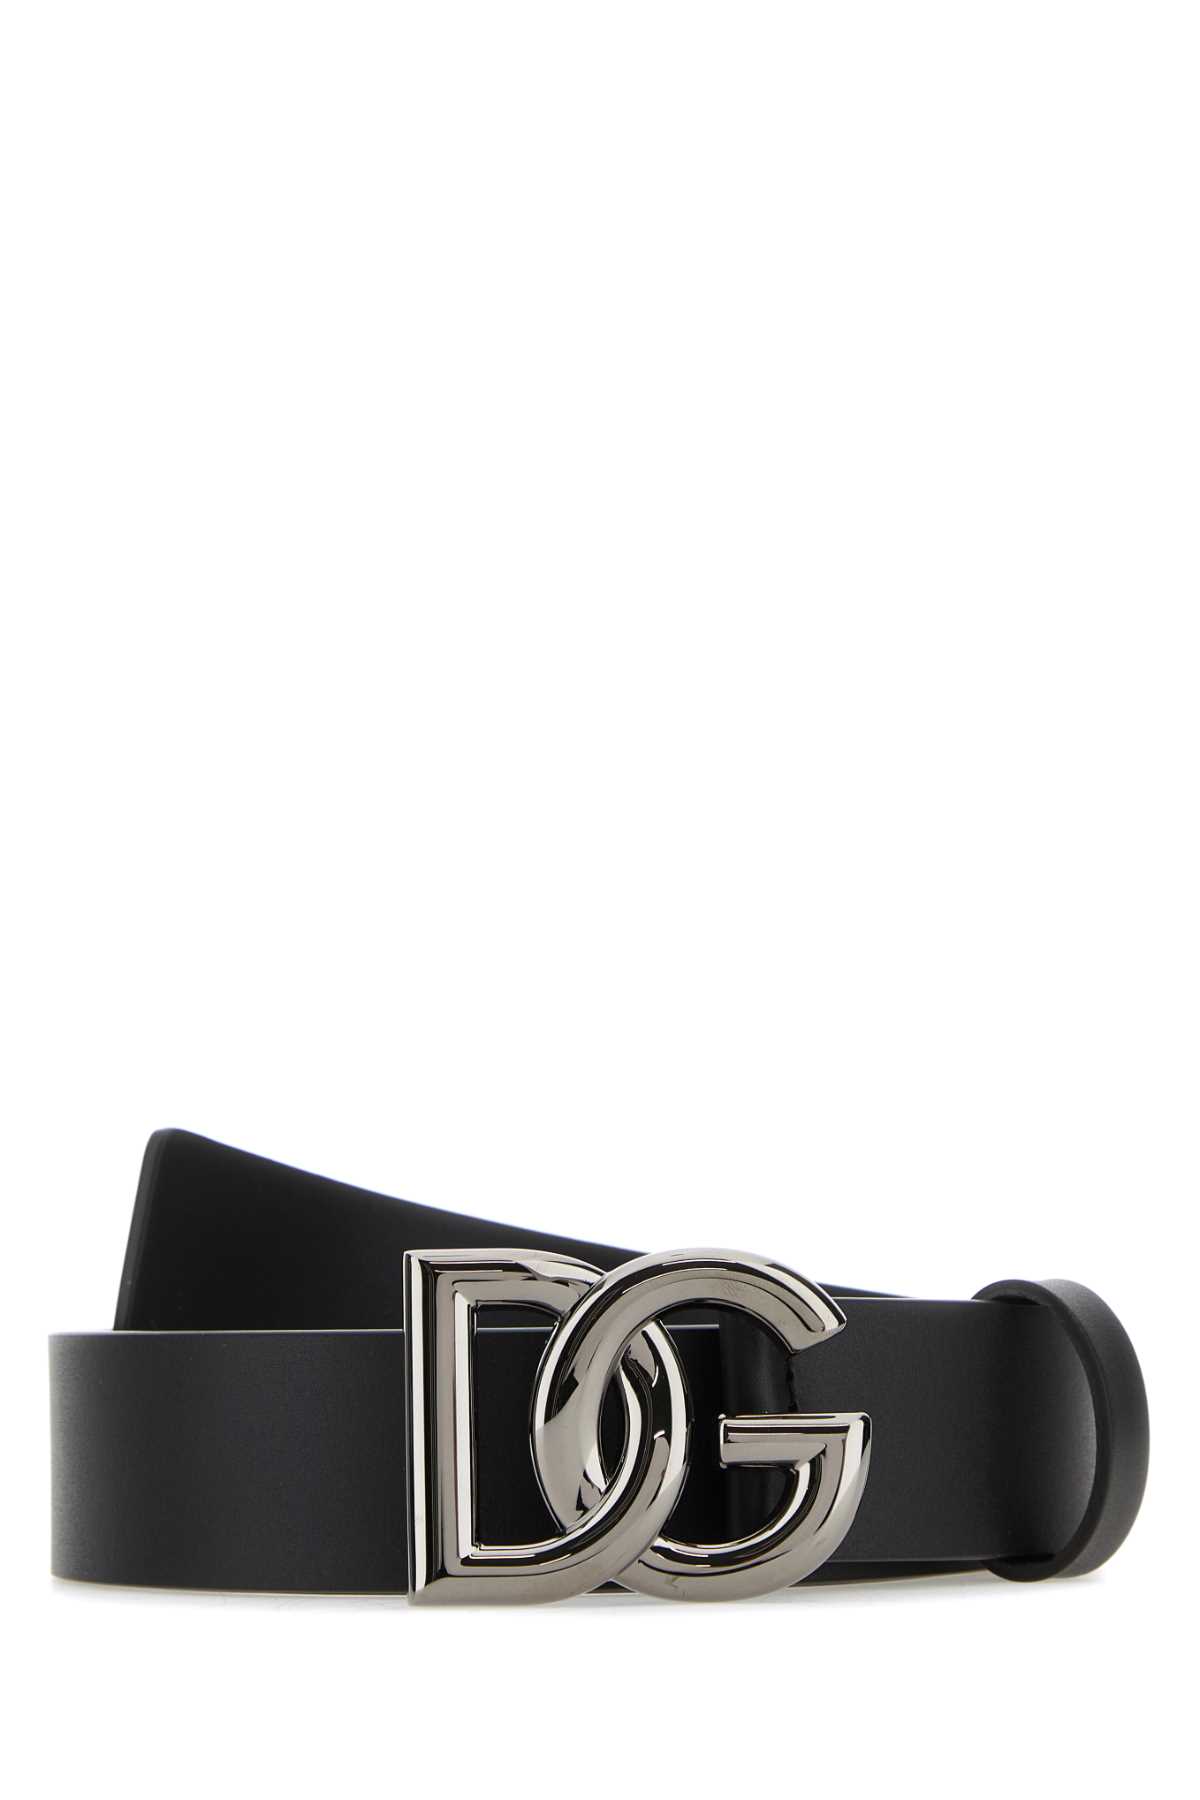 Shop Dolce & Gabbana Black Leather Belt In 8v363